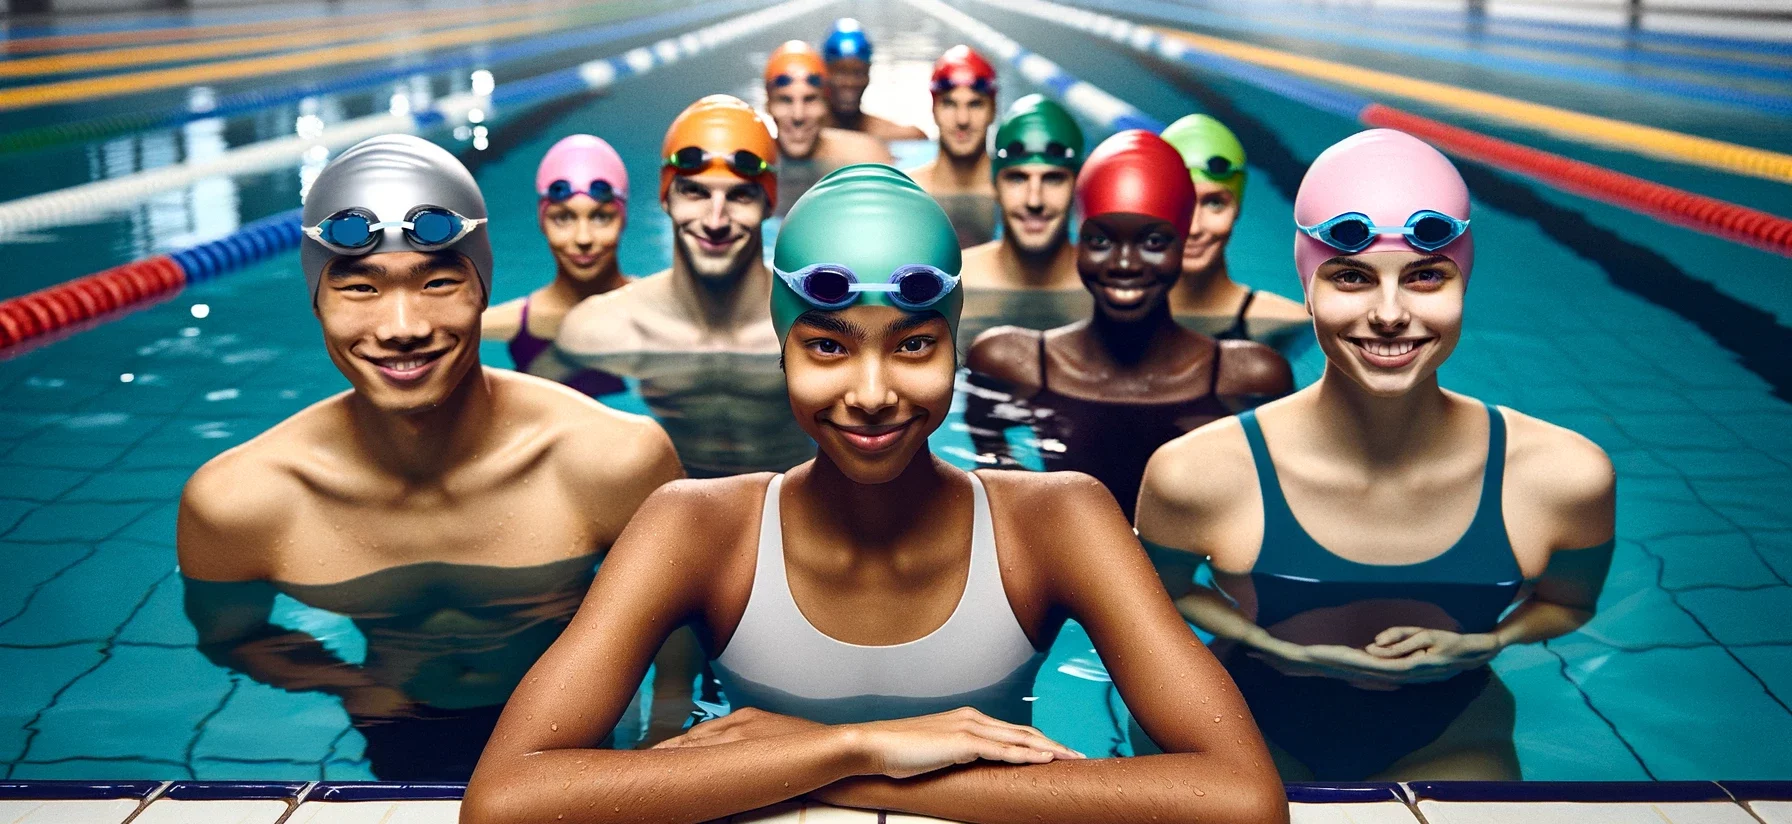 Foto einer Gruppe von Schwimmern am Rande eines olympischen Schwimmbeckens, die alle bunte Silikon-Schwimmkappen tragen. Das Bild fängt eine Vielfalt an Herkunft und Geschlecht ein: ein ostasiatischer Mann, eine schwarze Frau und eine kaukasische Frau, alle mit Schwimmbrillen auf der Stirn, die selbstbewusst in die Kamera lächeln. Das Wasser des Pools ist kristallklar und reflektiert die helle Innenbeleuchtung, und die Schwimmer sind so aufgeregt, als wären sie bereit für ein Rennen.